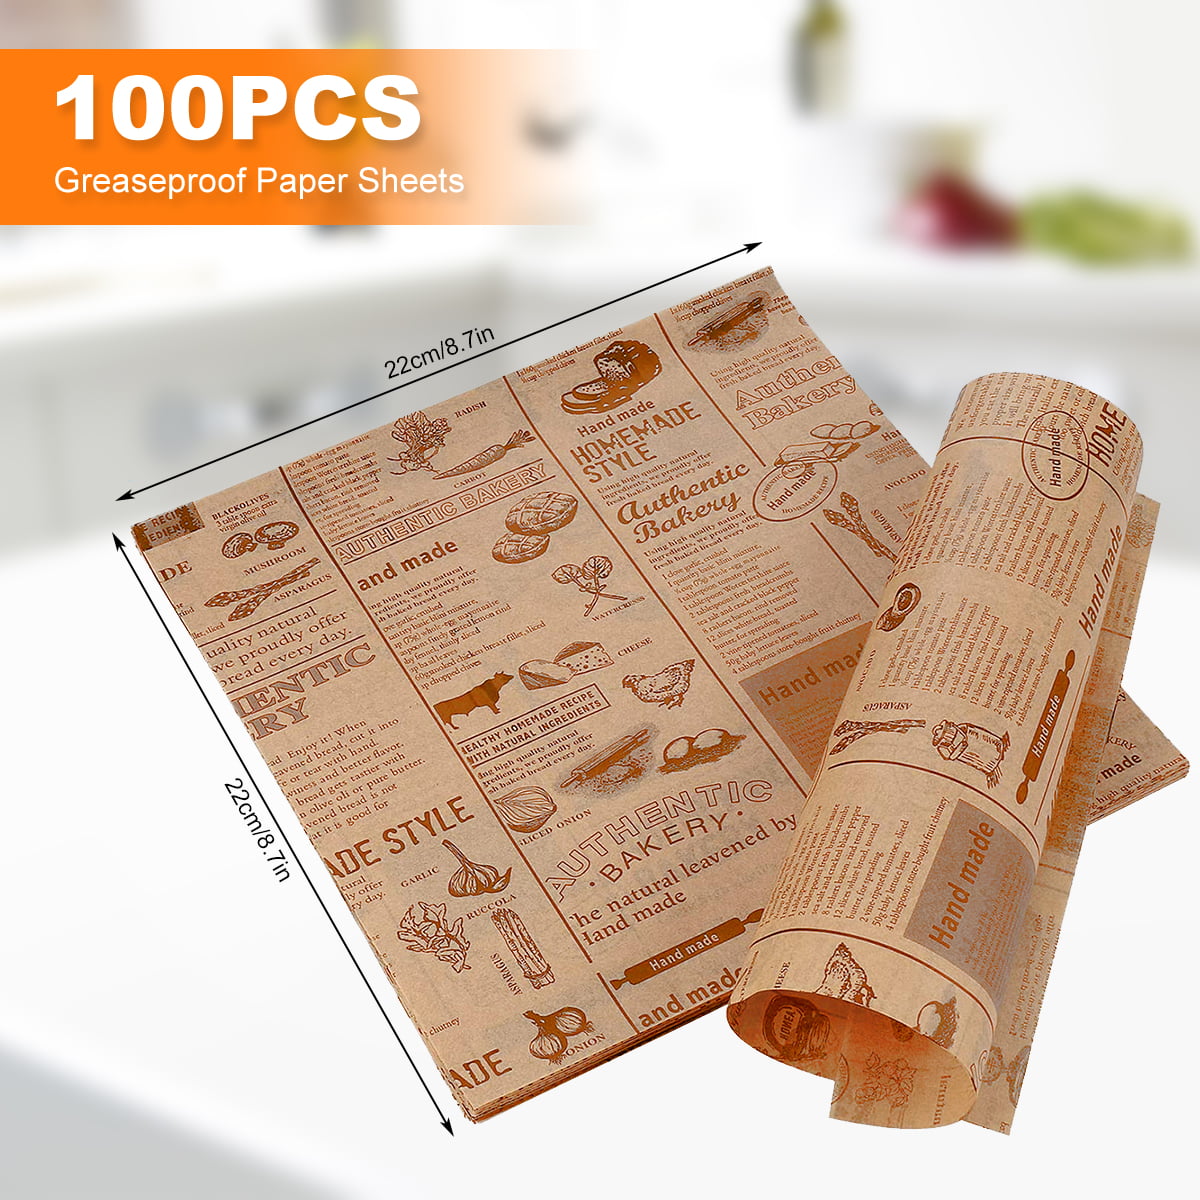 50pcs/bag Baking Paper Waterproof Elegant Dry Waterproof Wax Paper